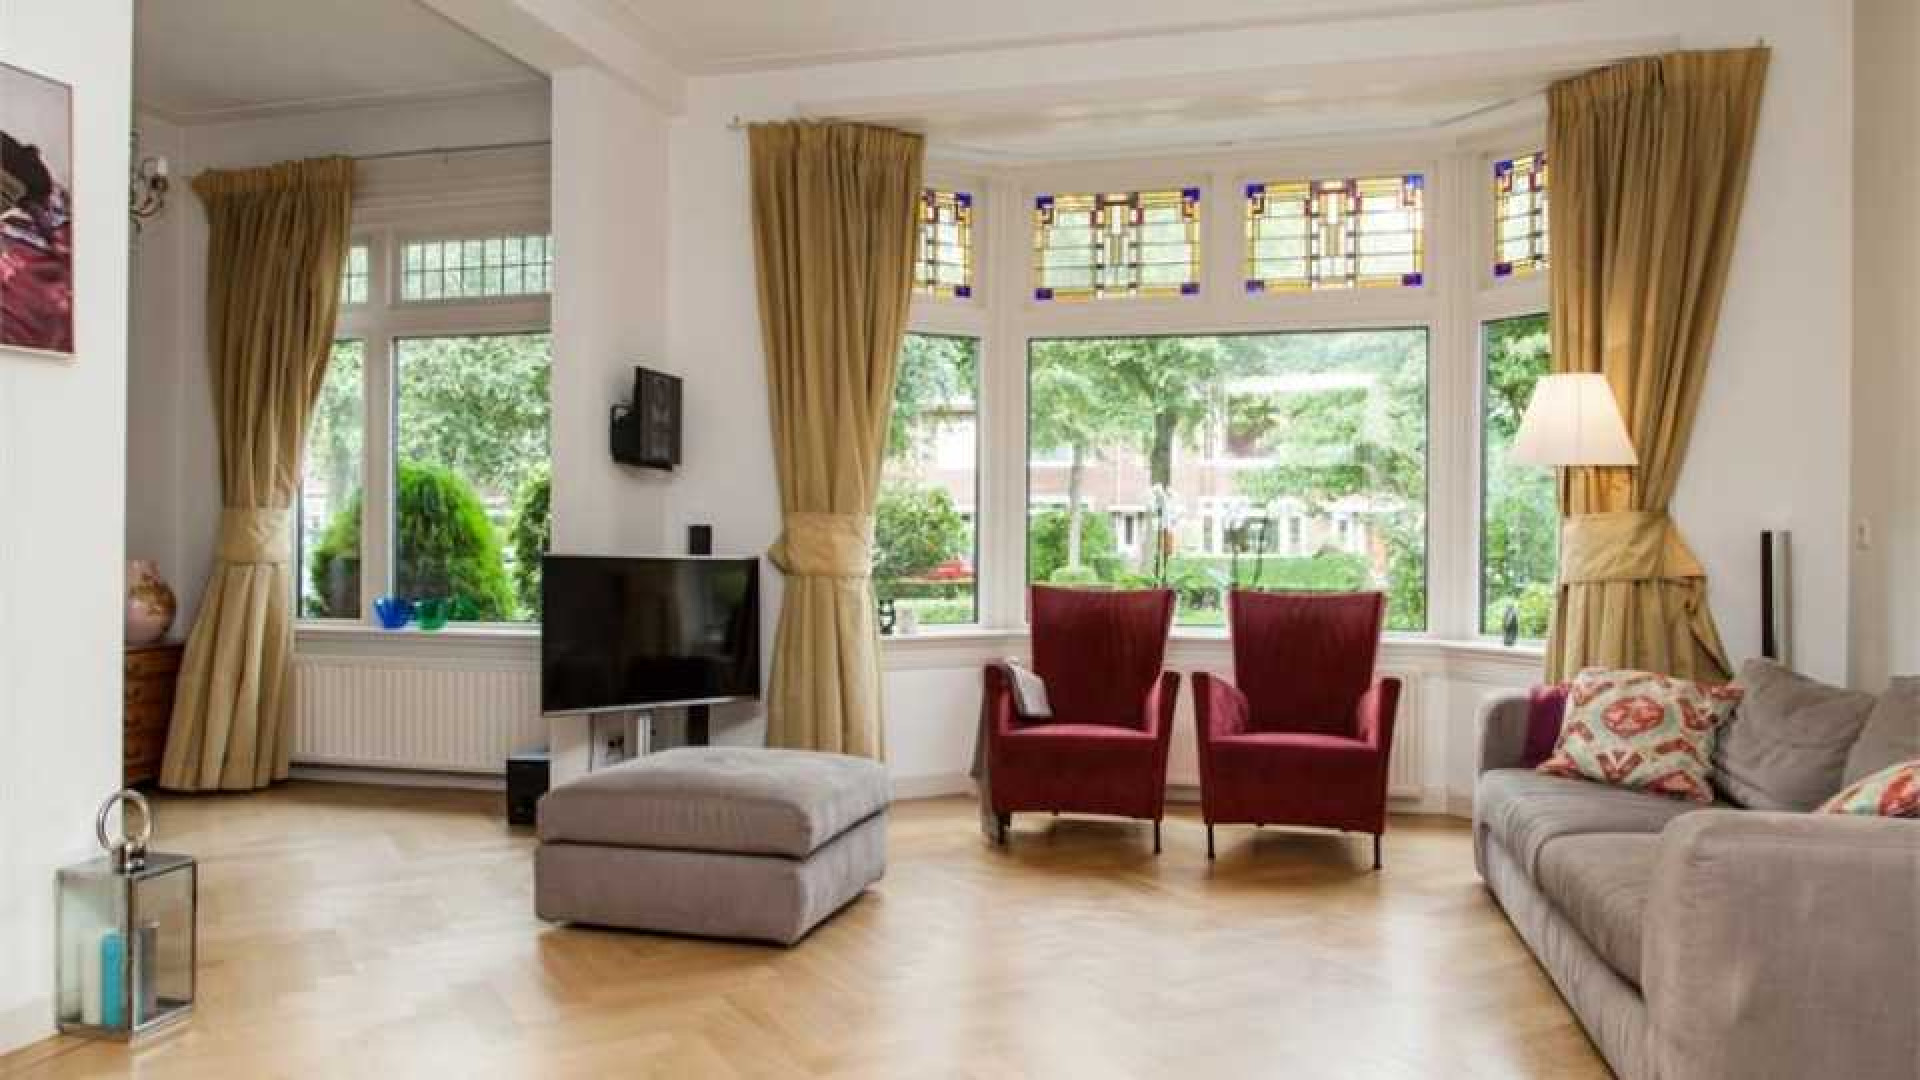 Alberto Stegeman koopt uit eigen zak voor bijna 1 miljoen villa in Heemstede. Zie foto's 3